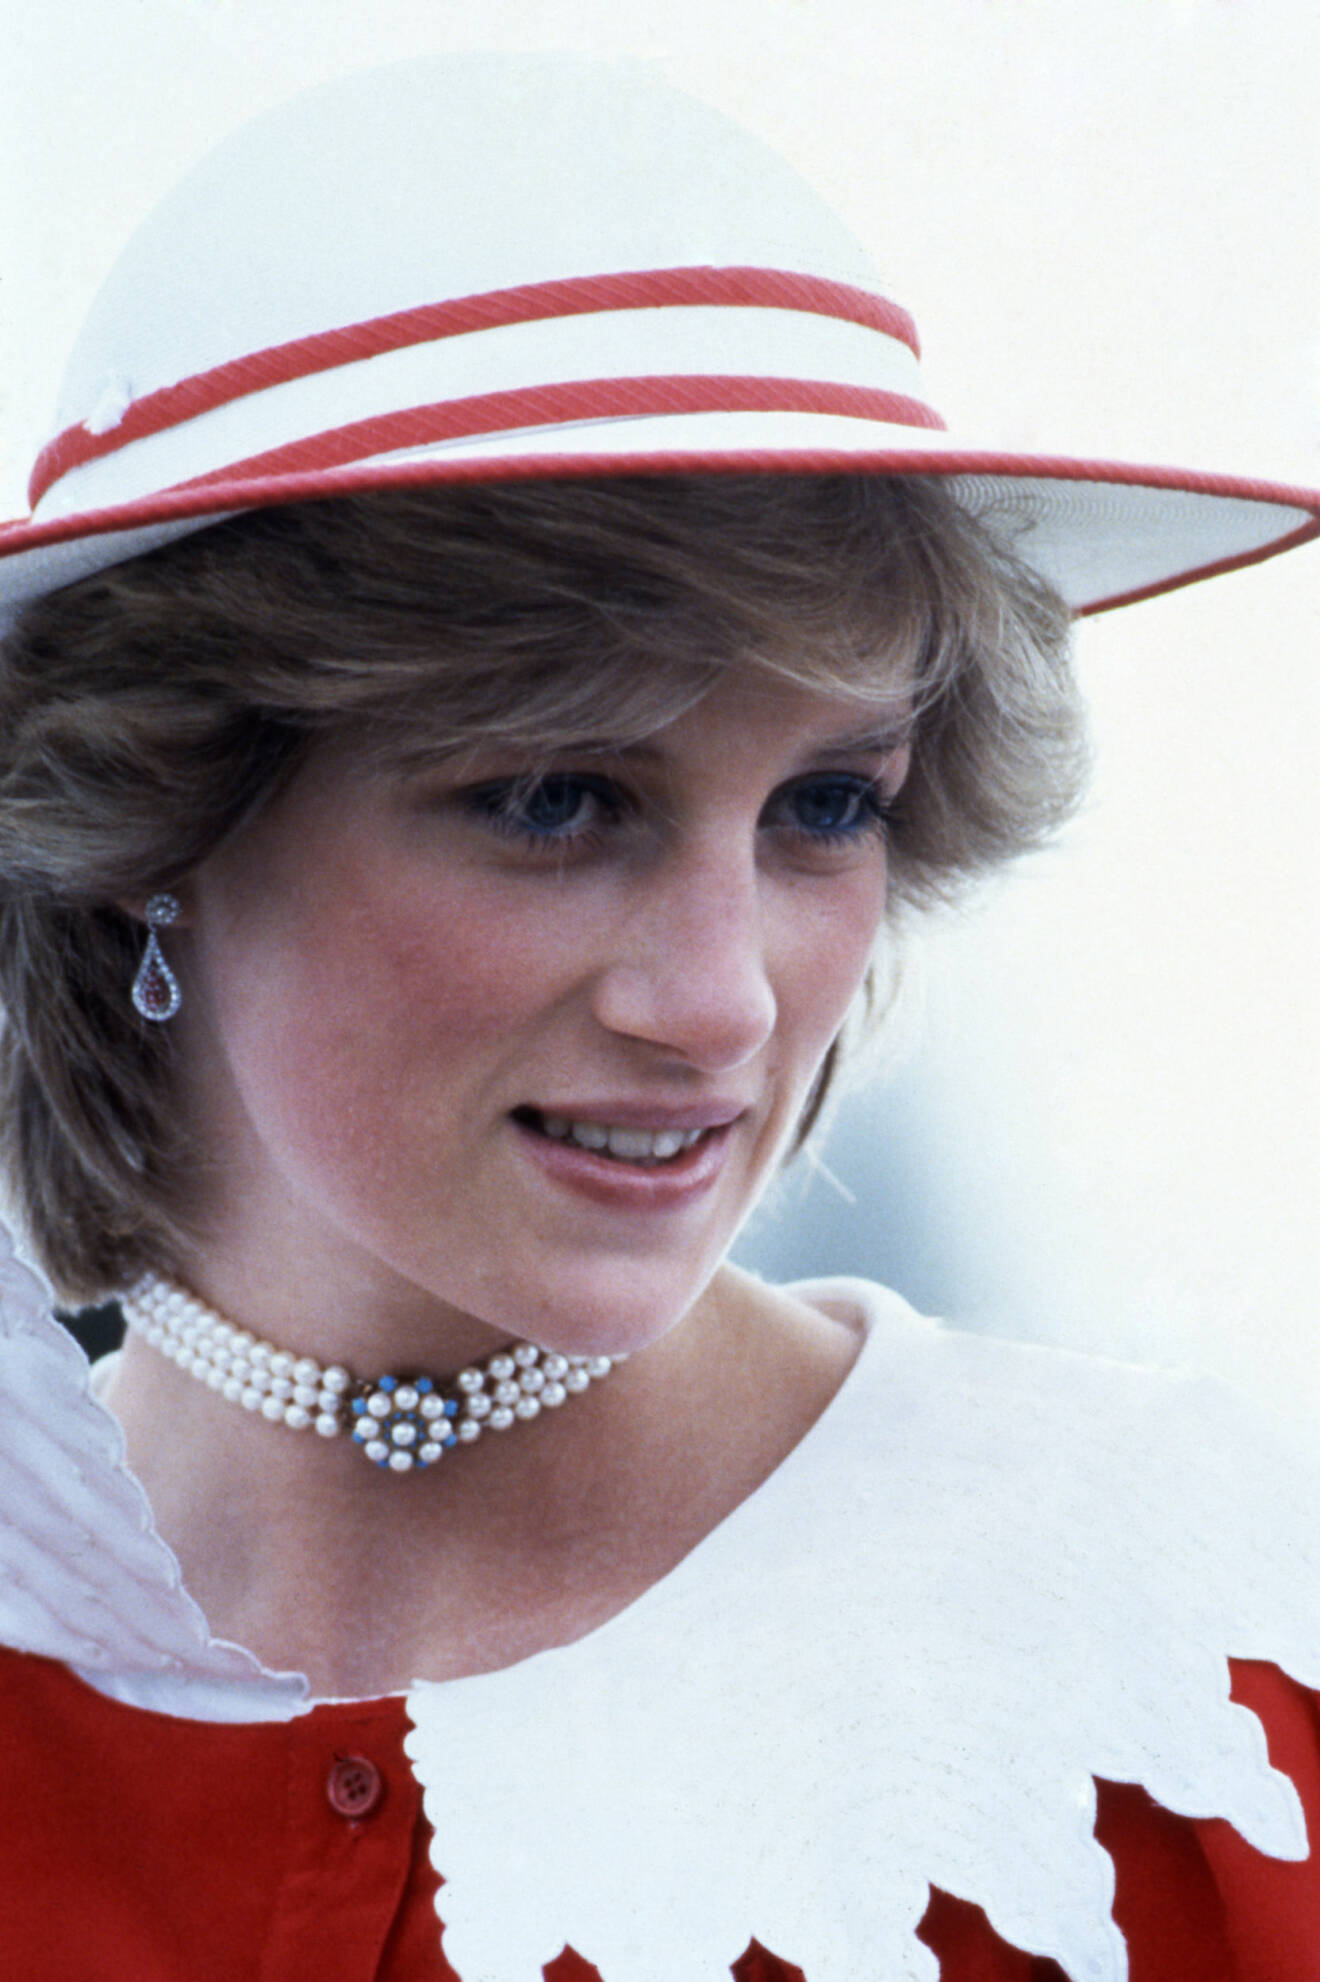 Prinsessan Diana i en röd blus med stor, vit krage på. Kragen är utskuren som en klassisk spetsduk och ger outfiten en romantisk touch. På huvudet har hon en röd och vitt hatt.